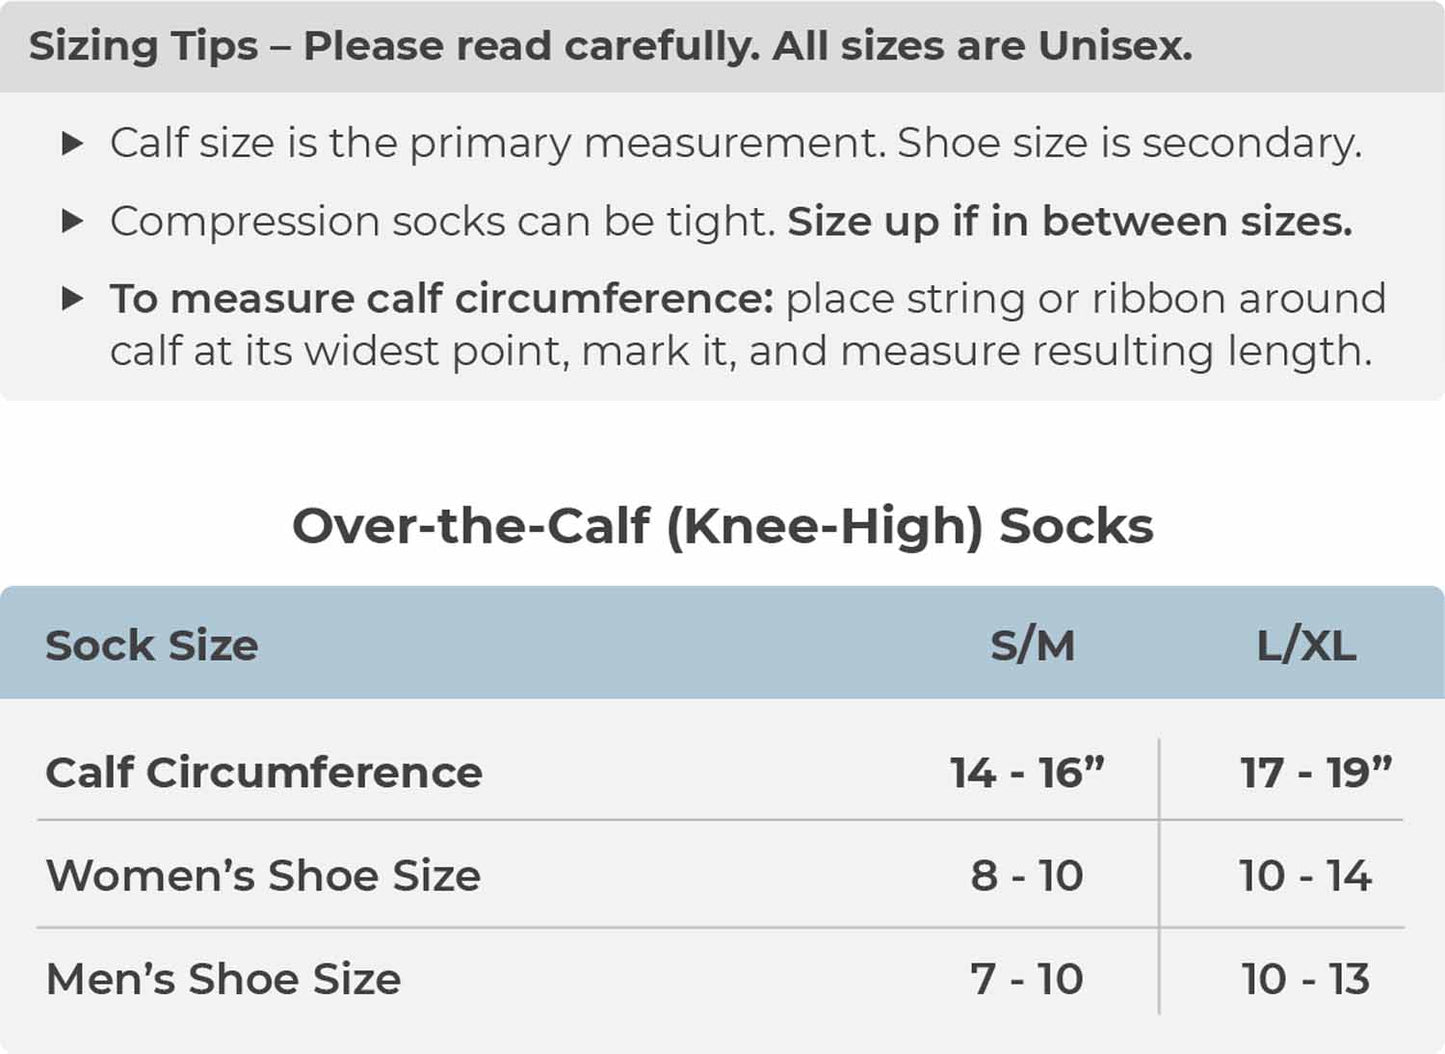 New Orleans Saints NFL Adult Compression Socks - Black